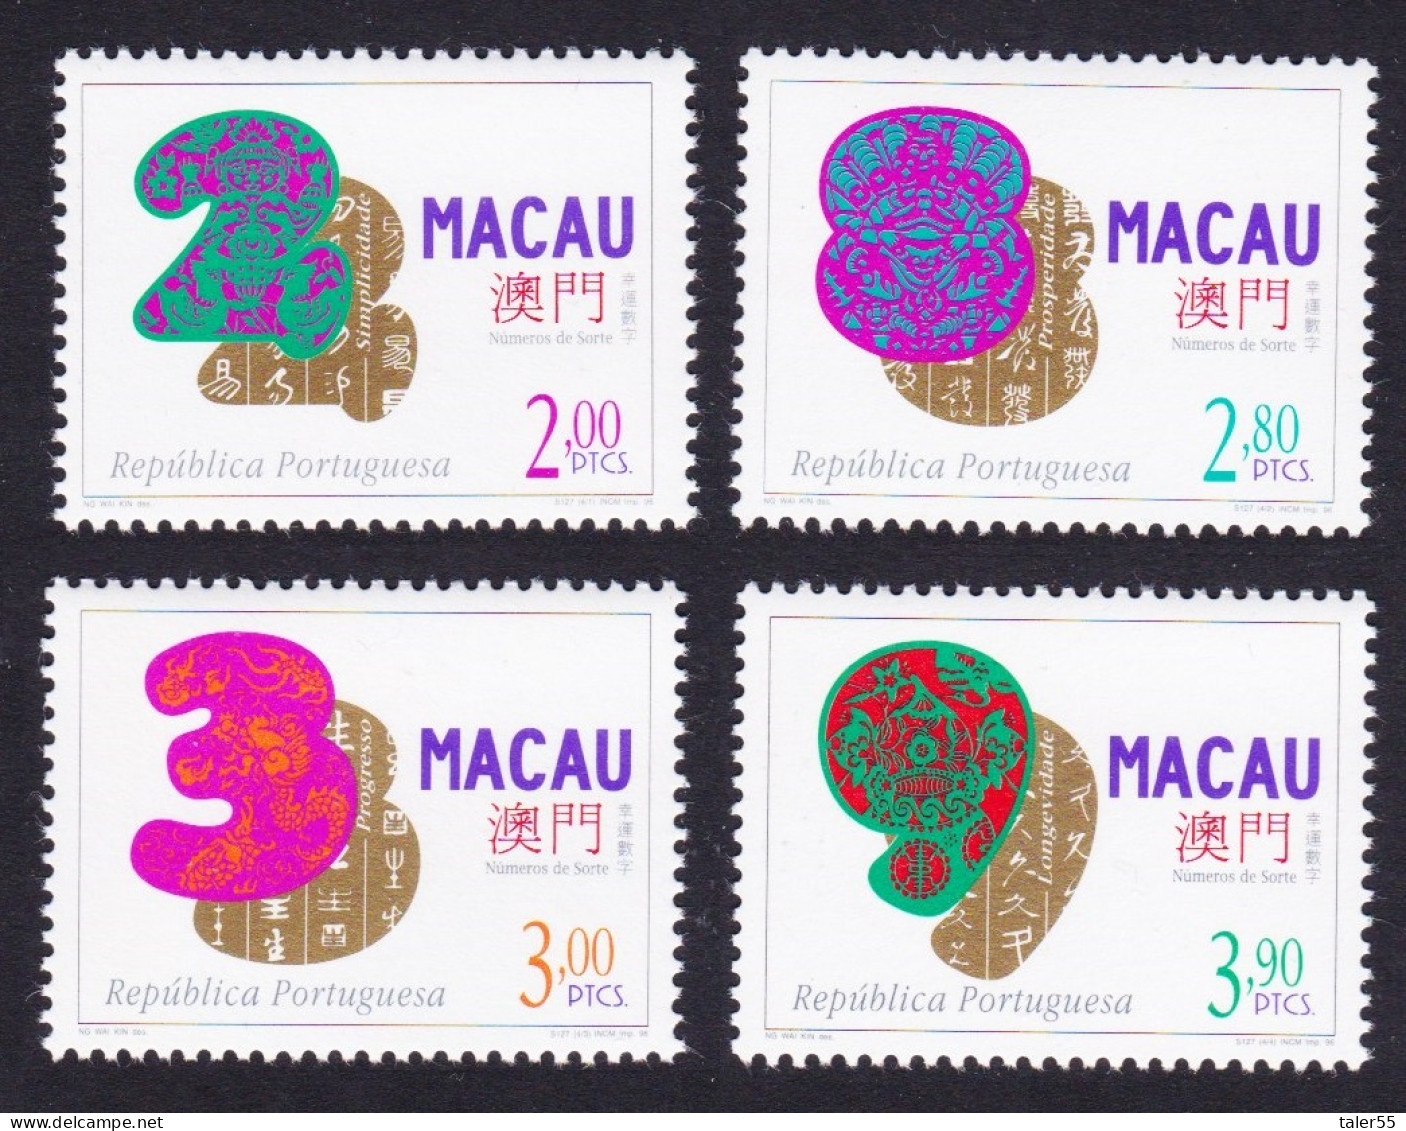 Macao Macau Lucky Numbers 4v 1997 MNH SG#969-972 MI#894-897 Sc#855-858 - Neufs